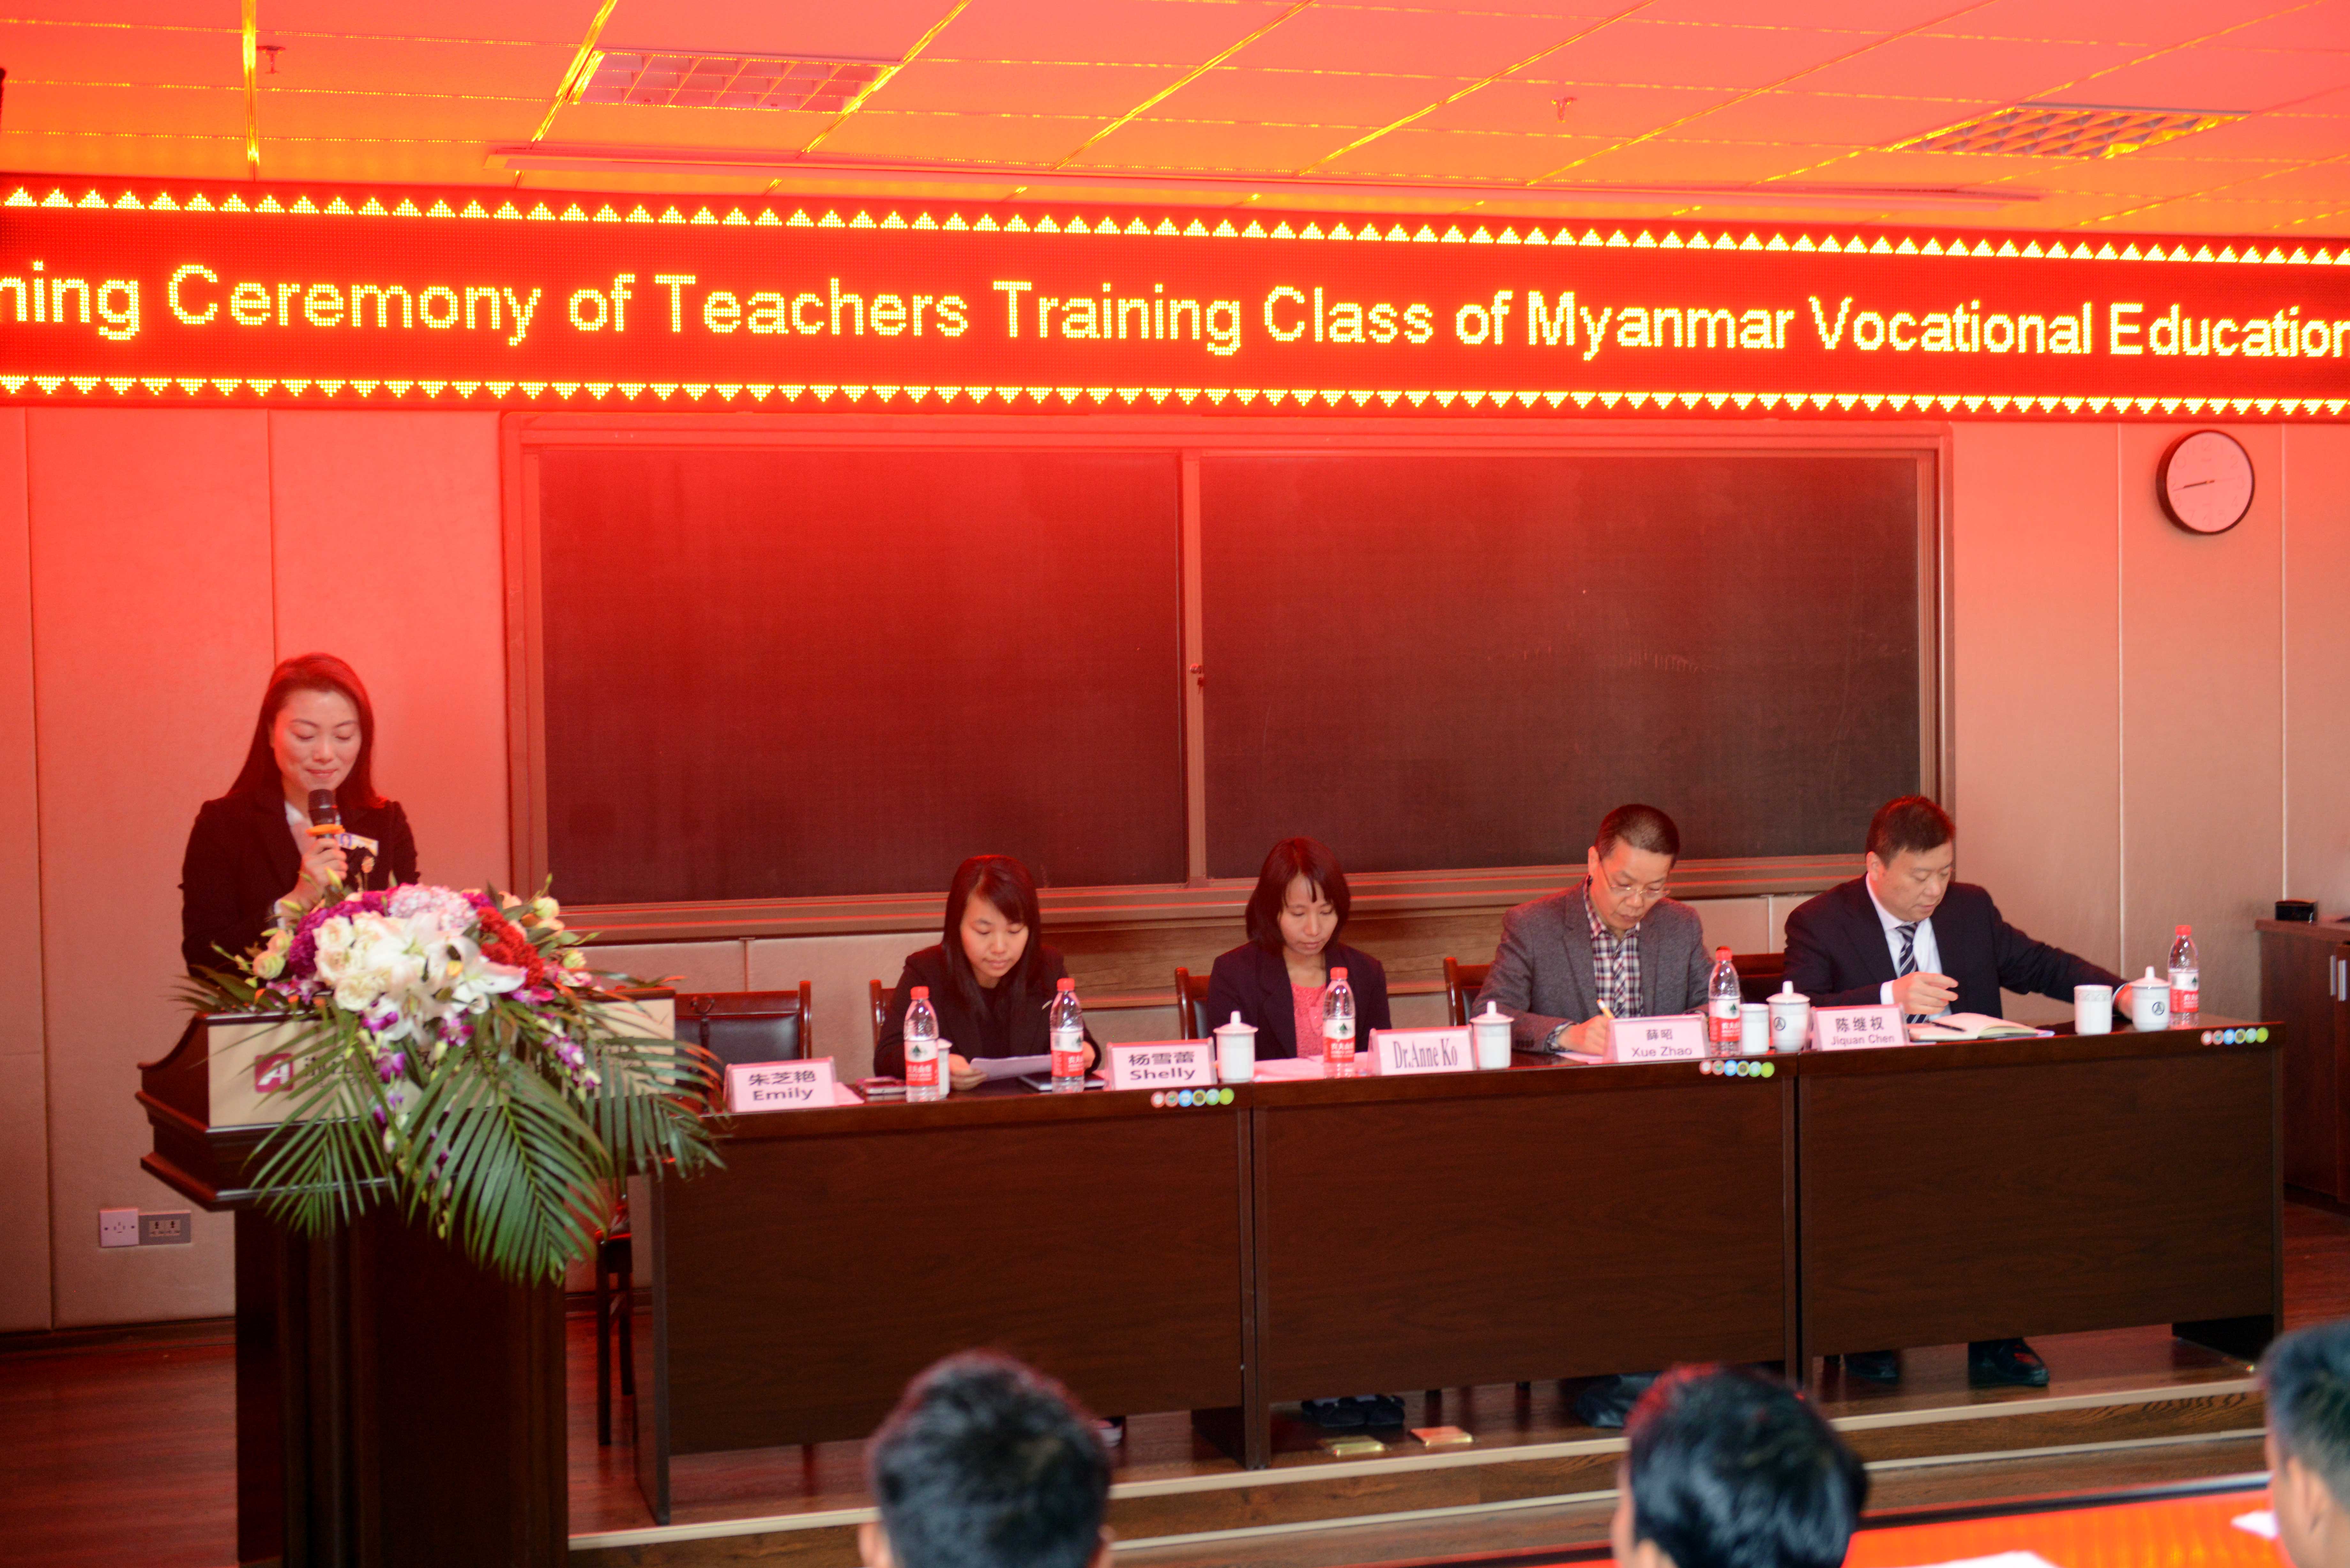 缅甸教育部选派20名职业院校老师来亚龙学习培训1个月